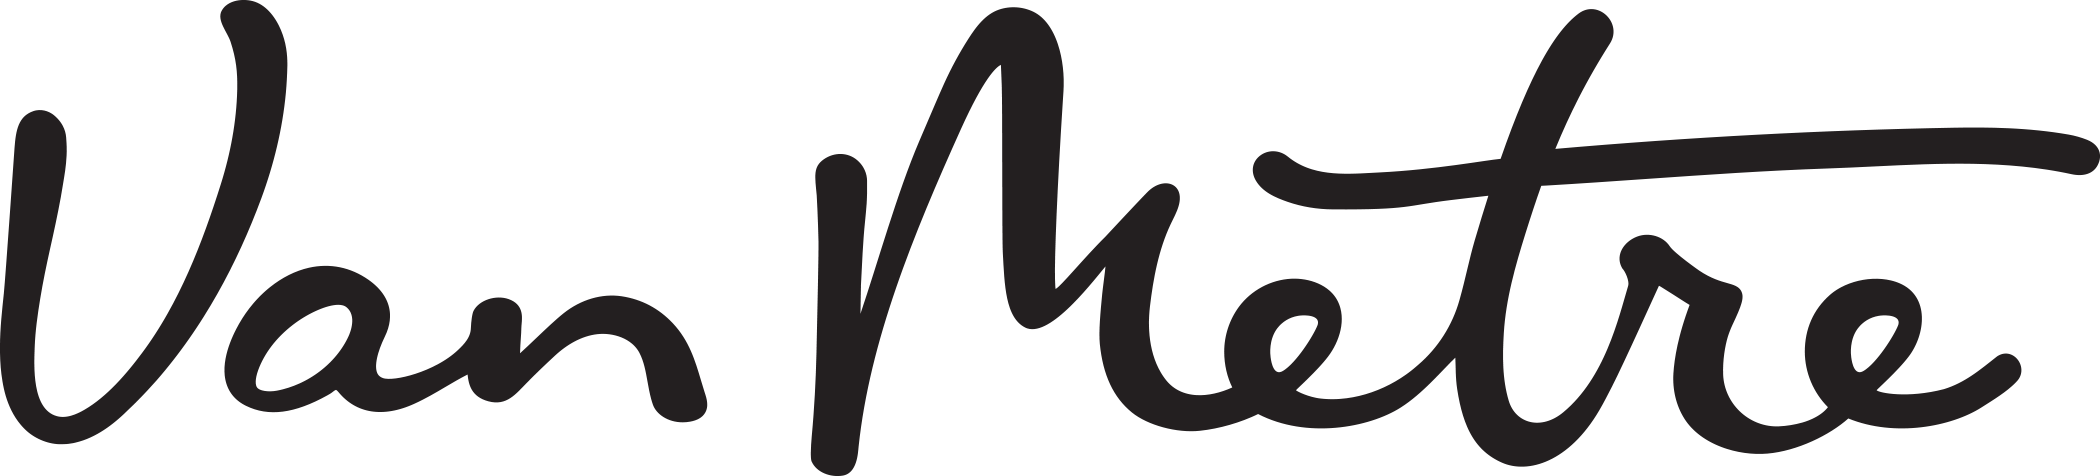 Van Metre Companies logo